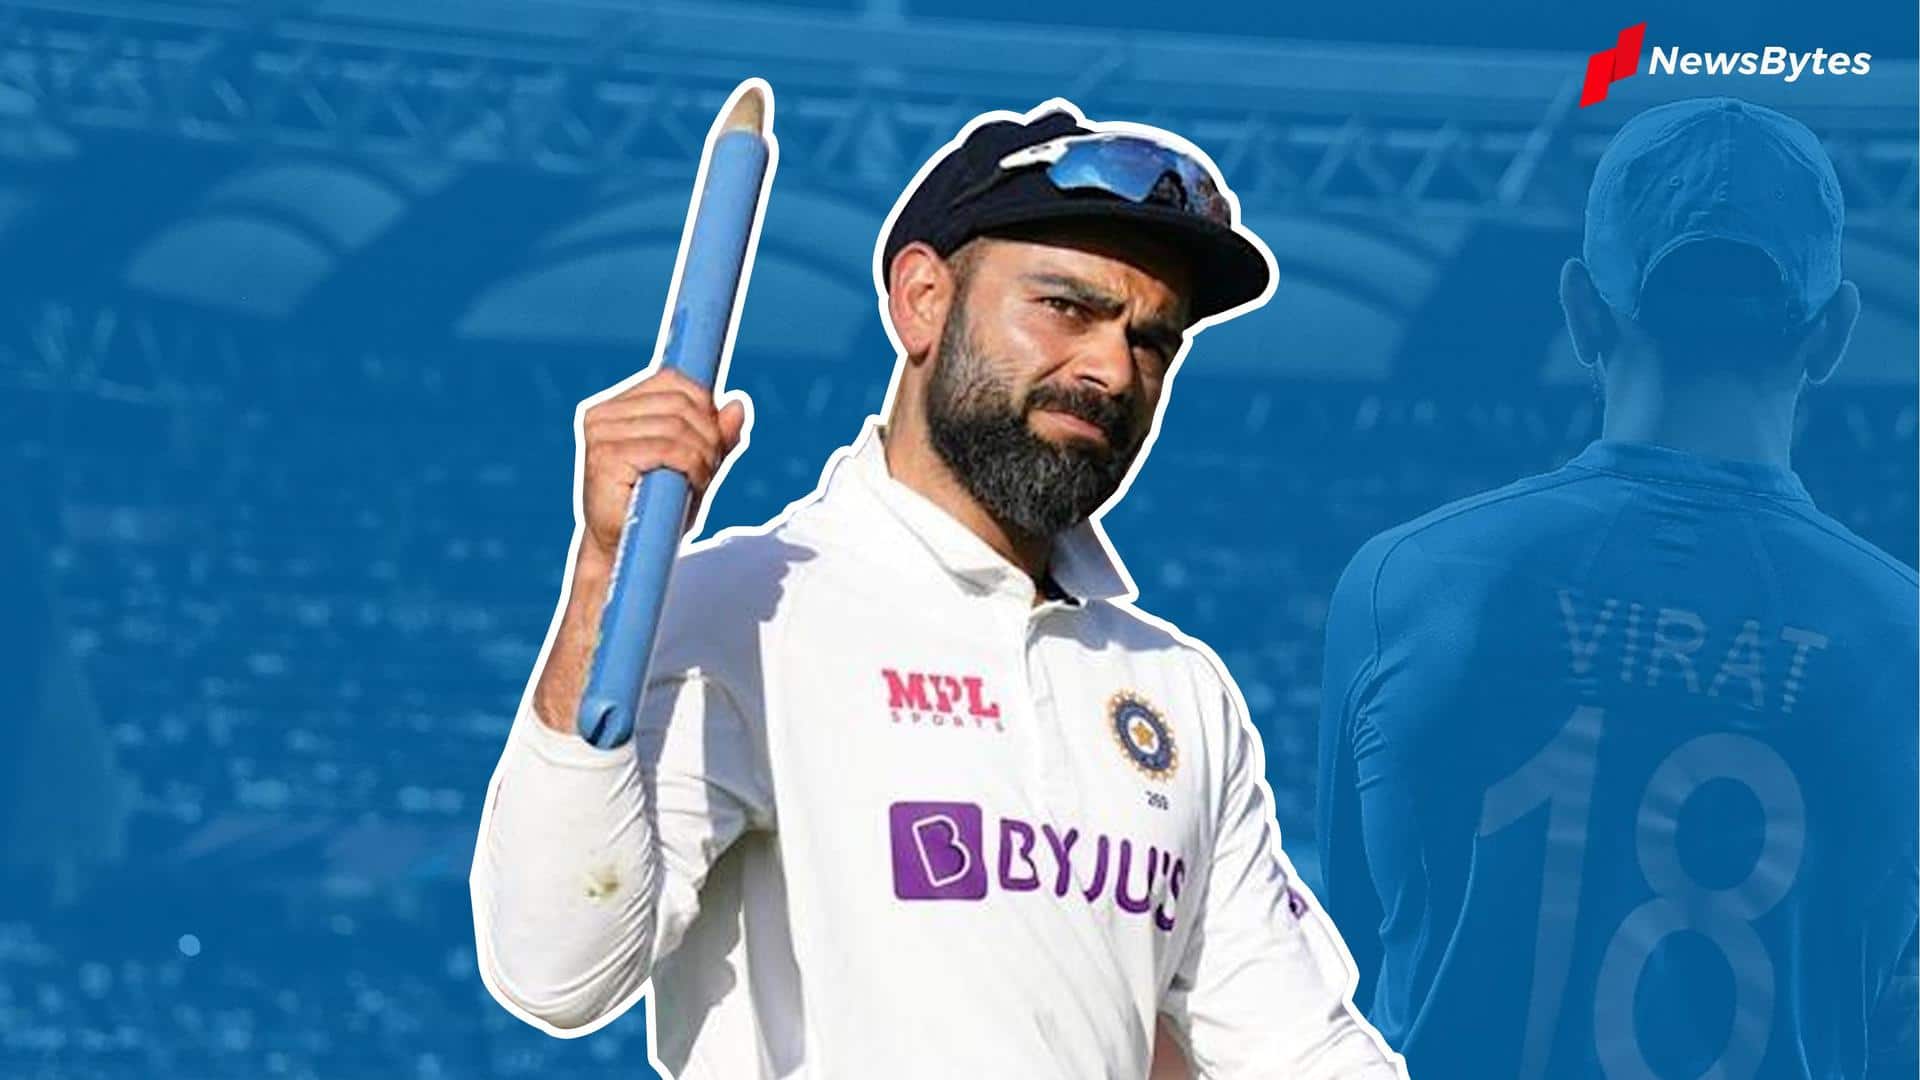 Virat Kohli's Test captaincy relinquishment was a surprise: Sourav Ganguly